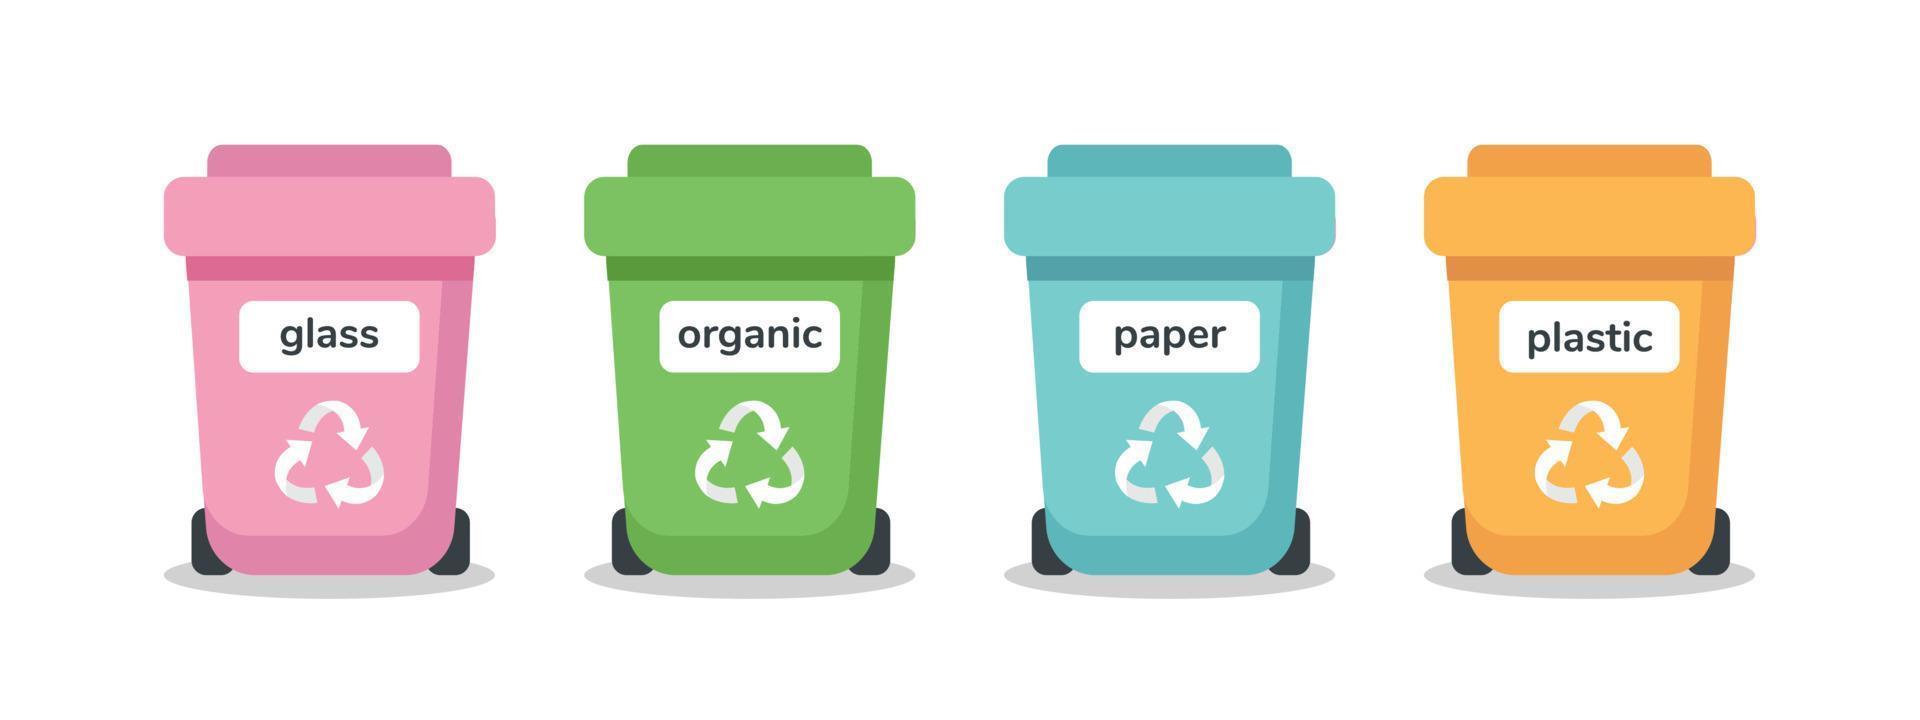 concept de tri des déchets. différentes poubelles colorées. recyclage, gestion des déchets, écologie, durabilité. illustration vectorielle dans un style plat isolé sur blanc. vecteur